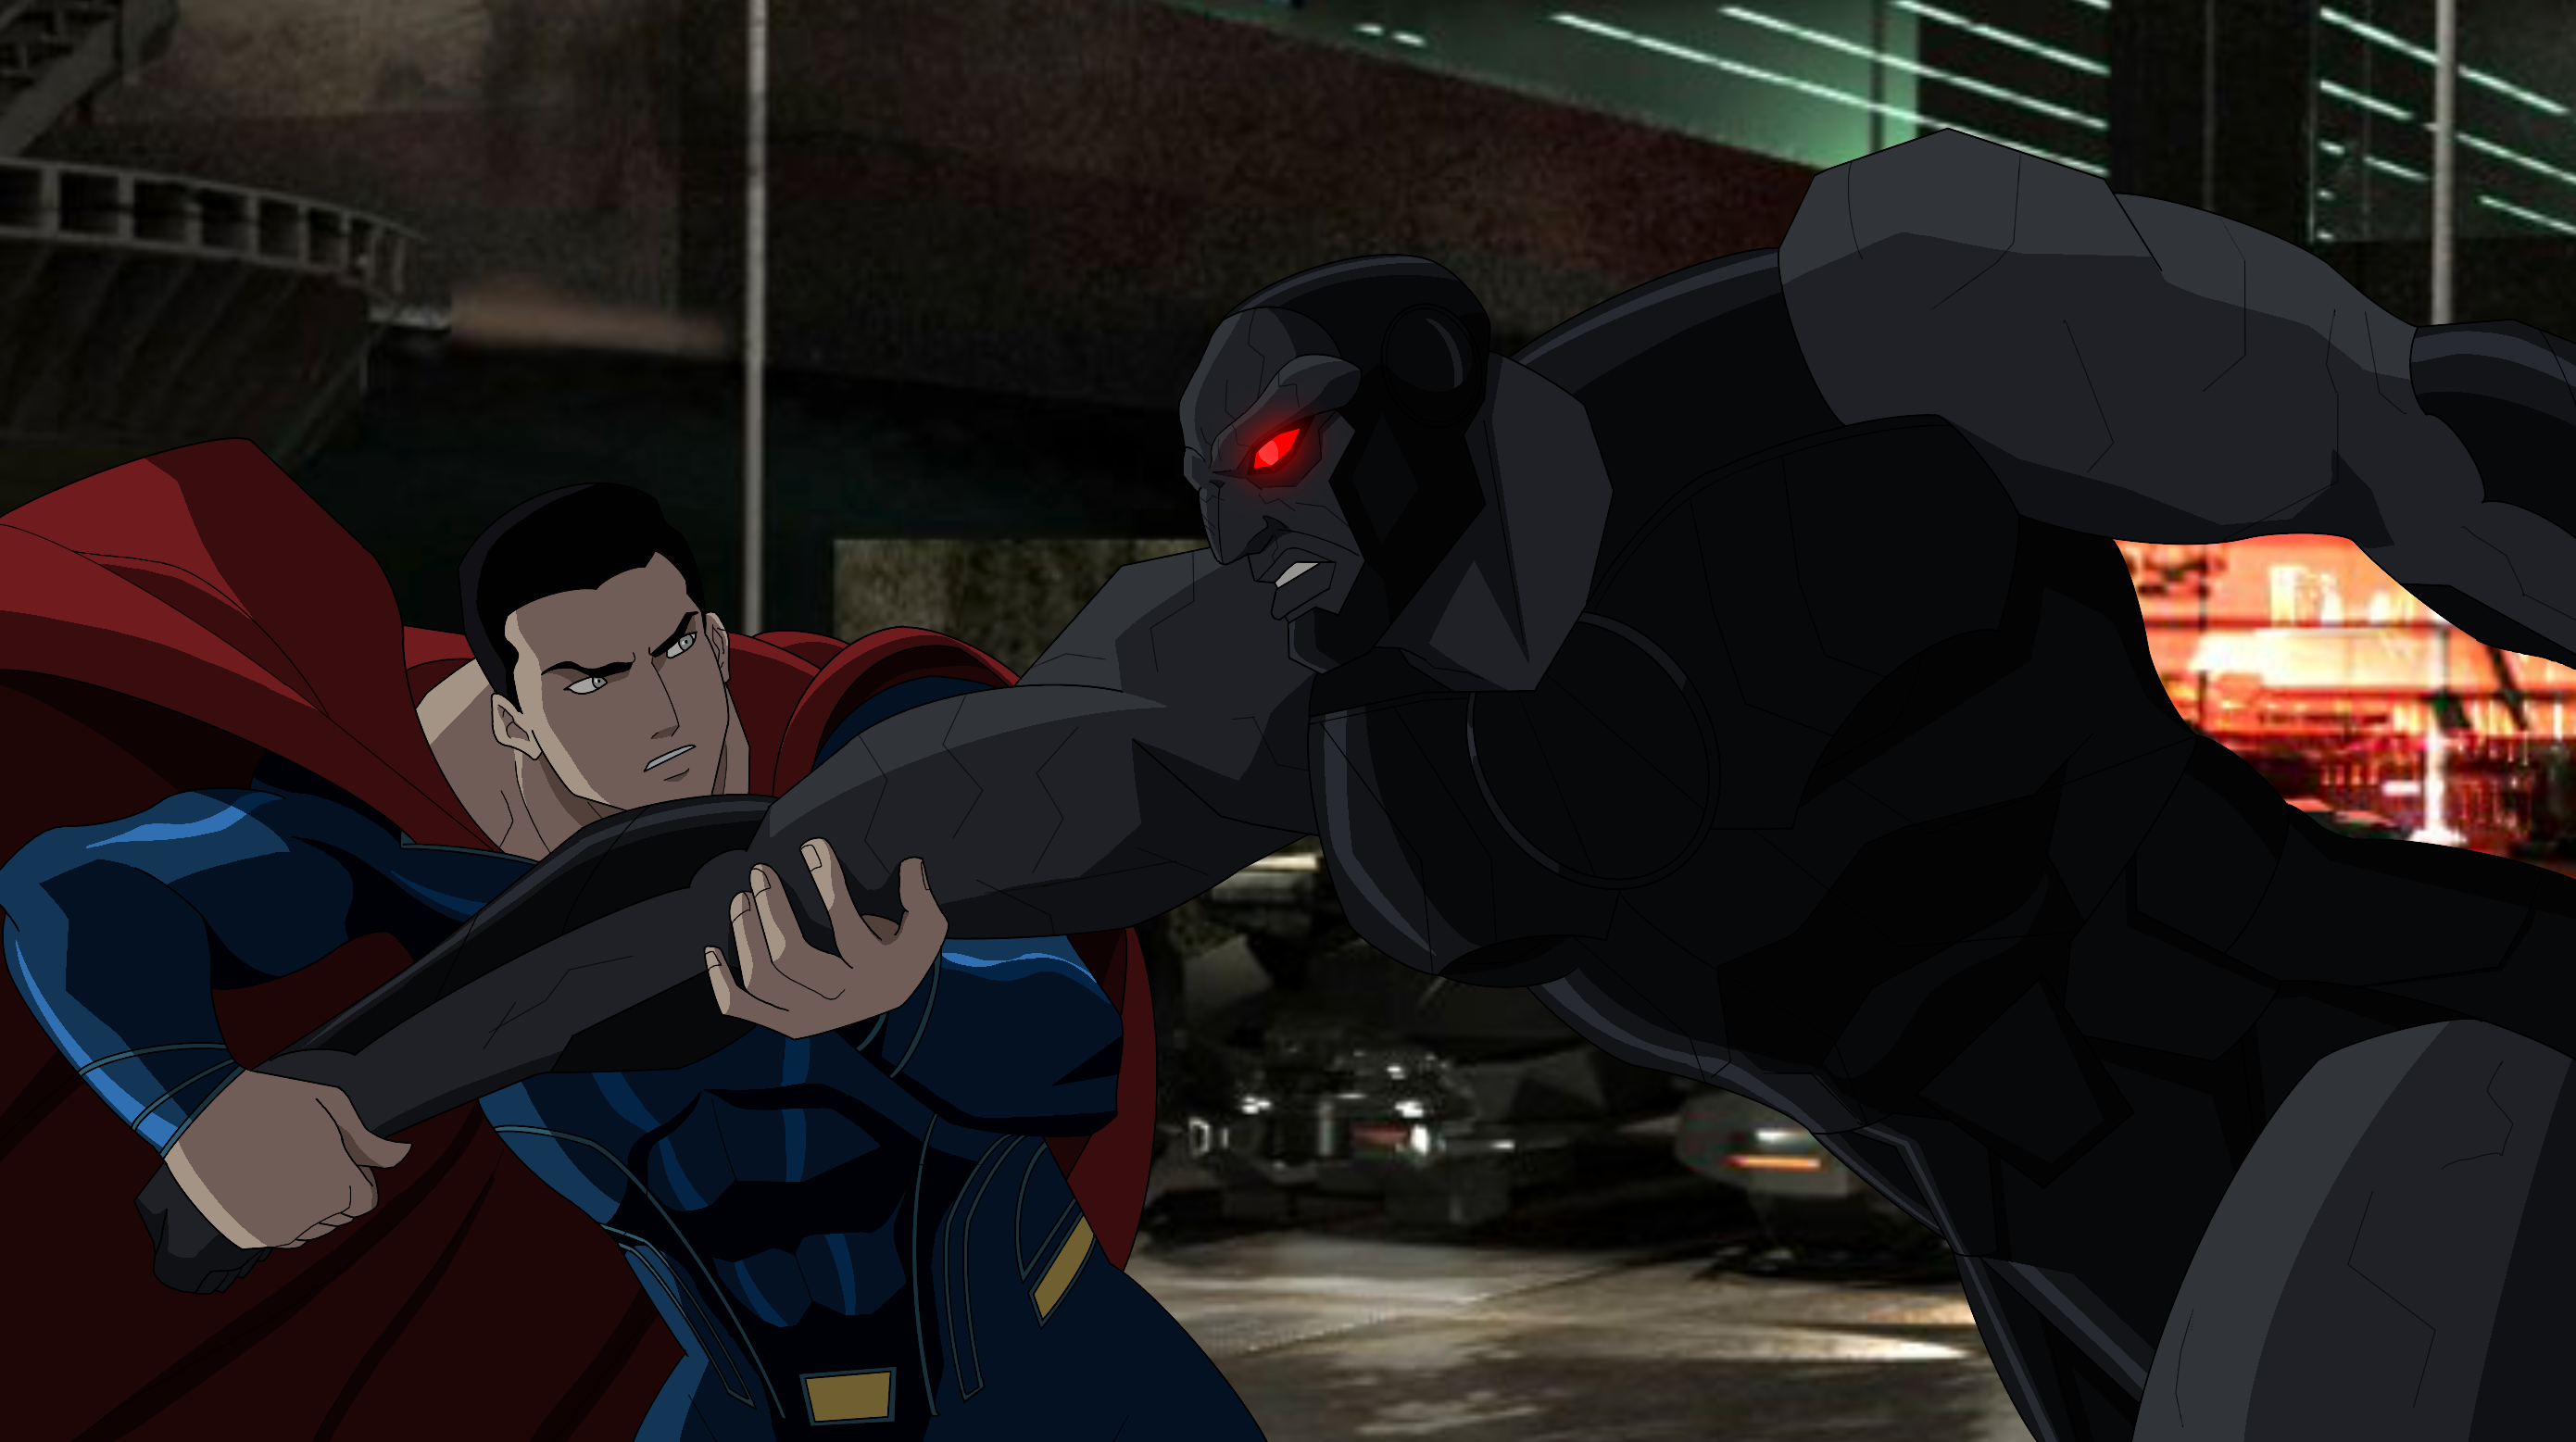 Superman vs Darkseid by Axel-Droga on DeviantArt